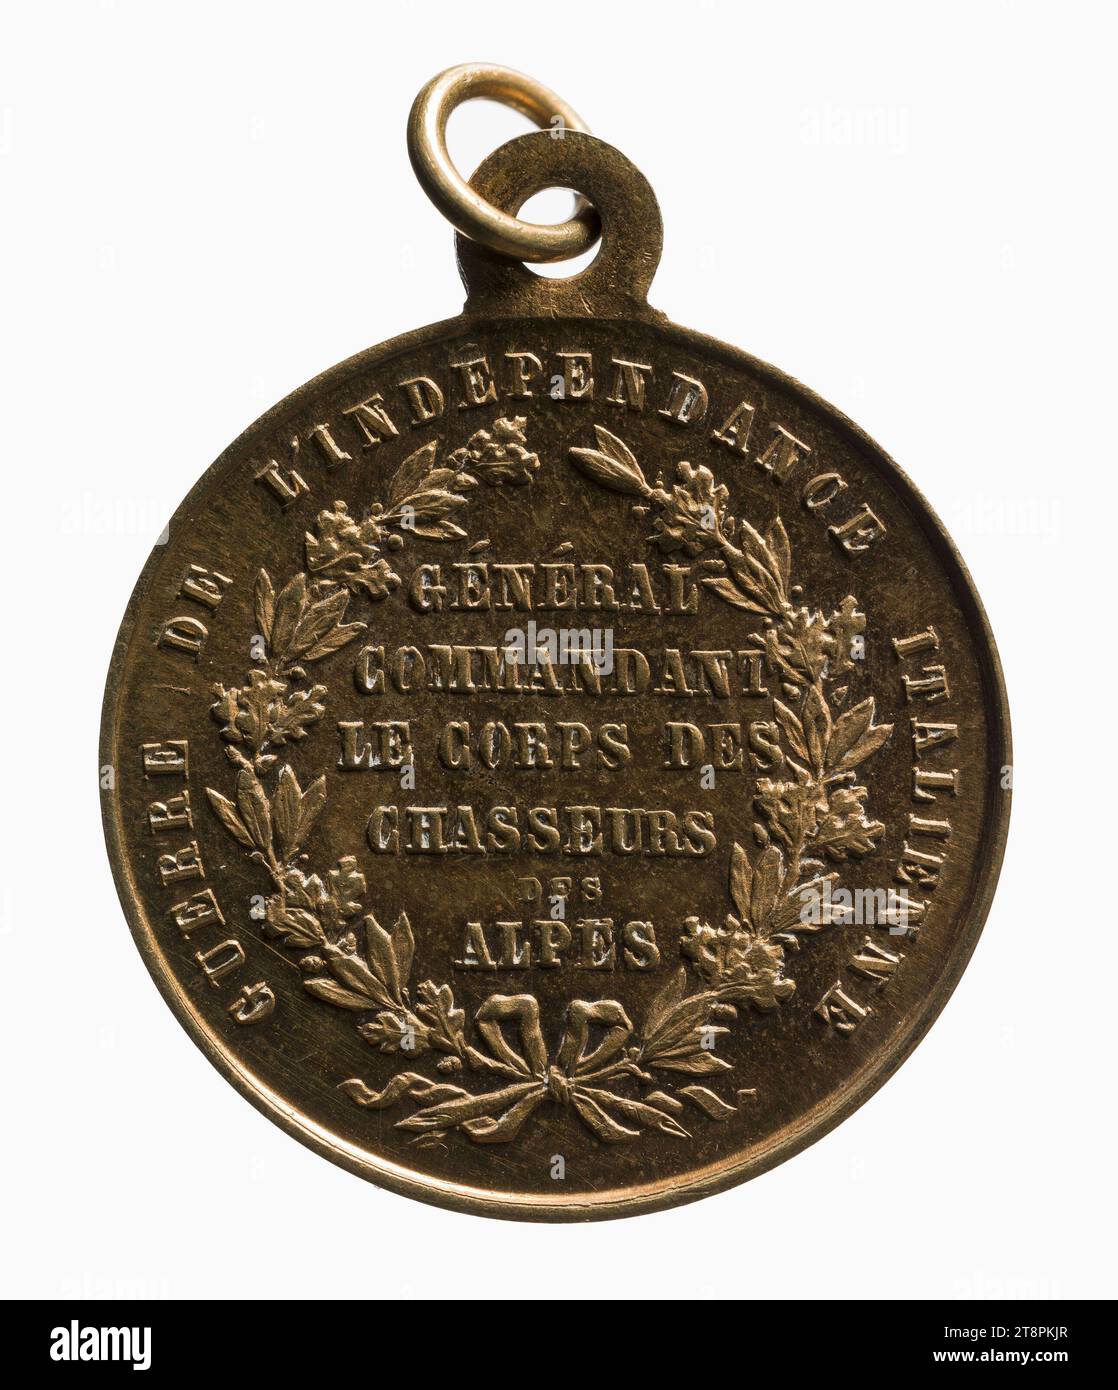 General Garibaldi kommandierte die Alpenjäger während des Italienischen Unabhängigkeitskrieges, 19. Jahrhundert, Numismatische Medaille, Kupfer, vergoldet = Vergoldung, Abmessungen - Werk: Durchmesser: 2,3 cm, Gewicht (Typenabmessung): 4,59 g Stockfoto